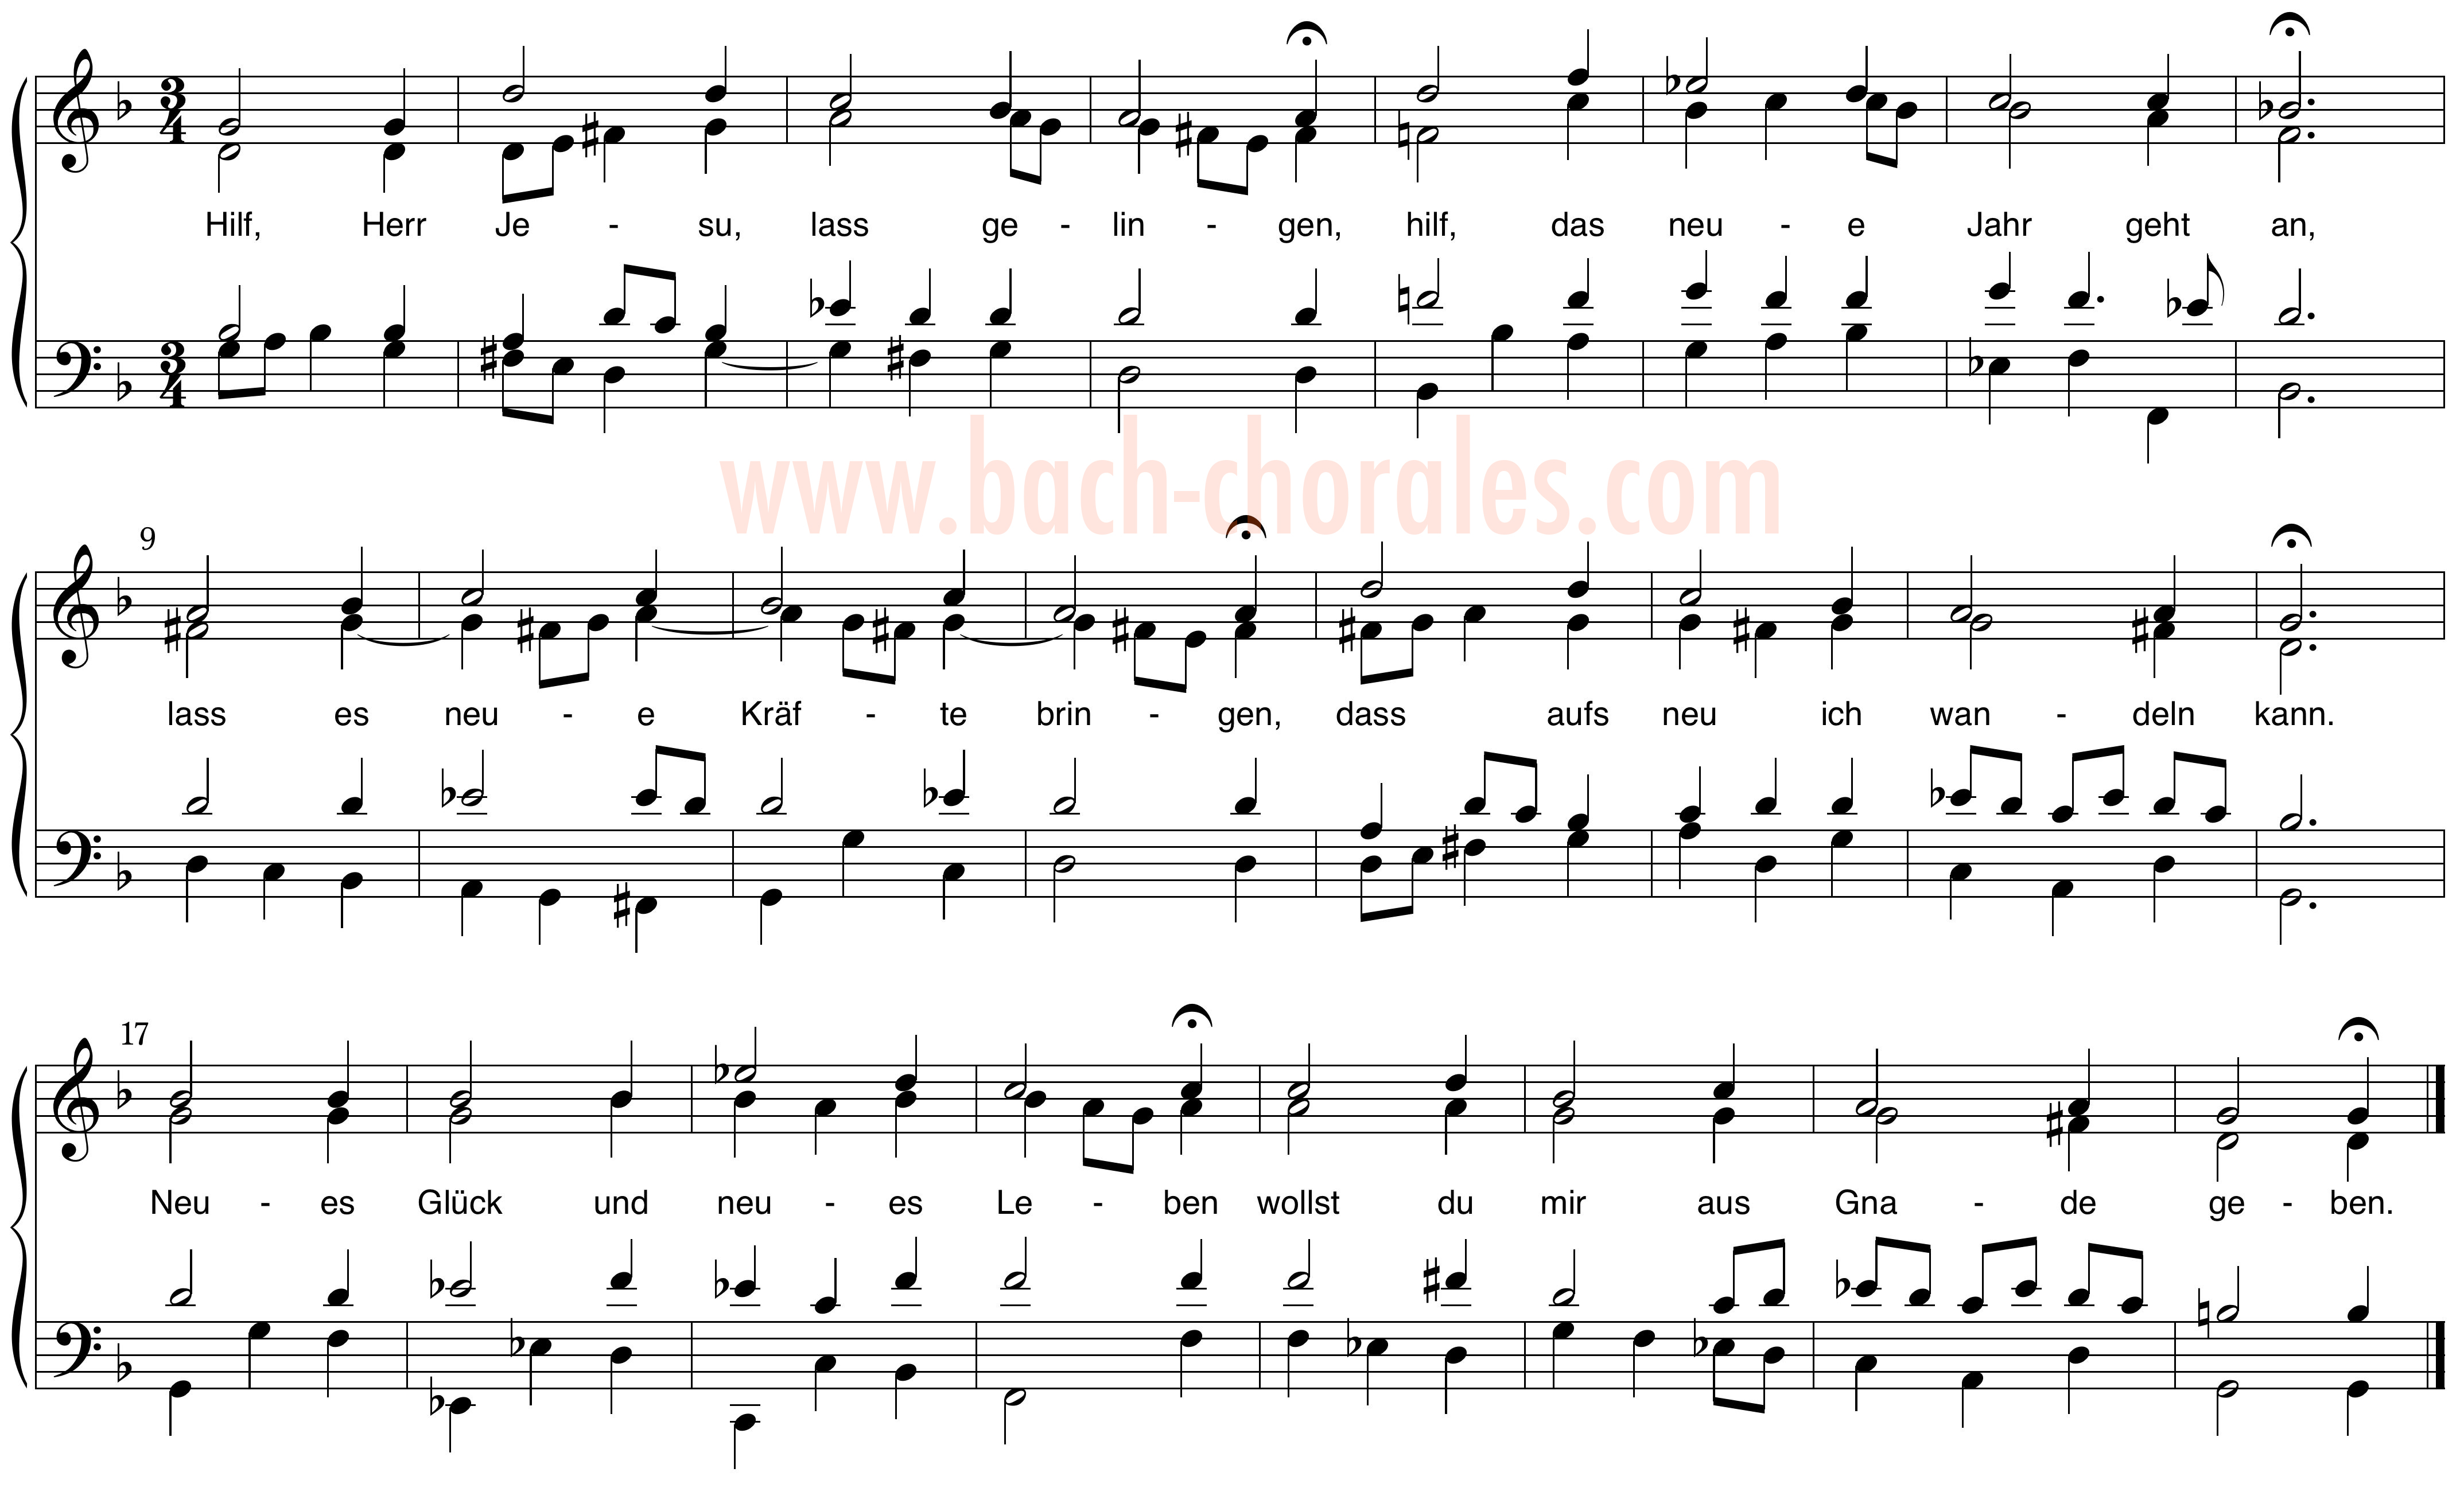 notenbeeld BWV 344 op https://www.bach-chorales.com/